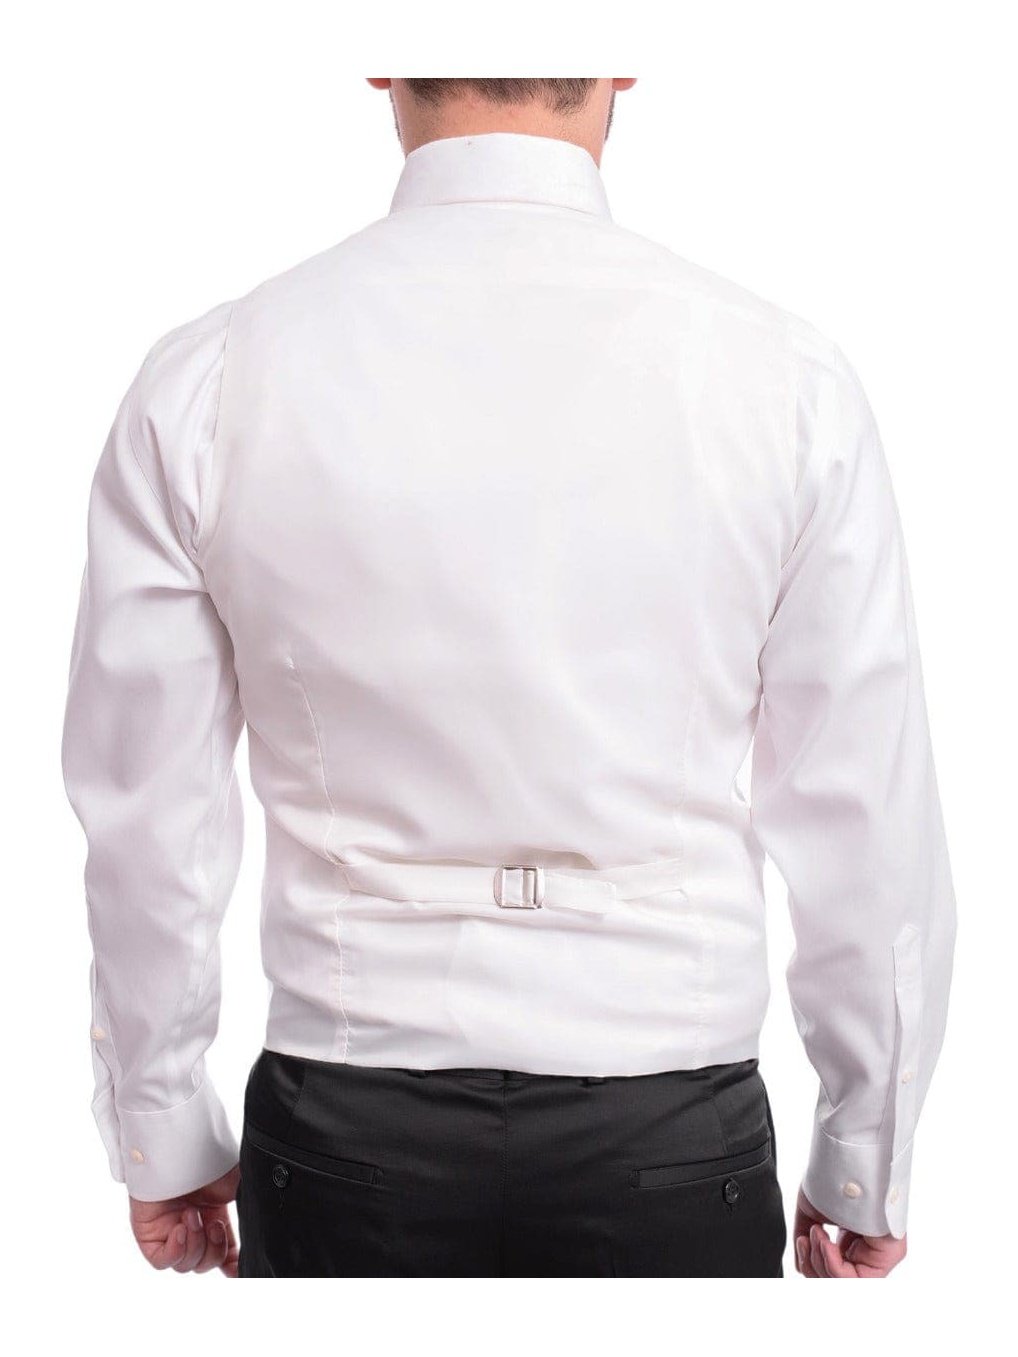 Cemden Sale Suits Cemden Slim Fit Textured White One Button Three Piece Tuxedo Suit